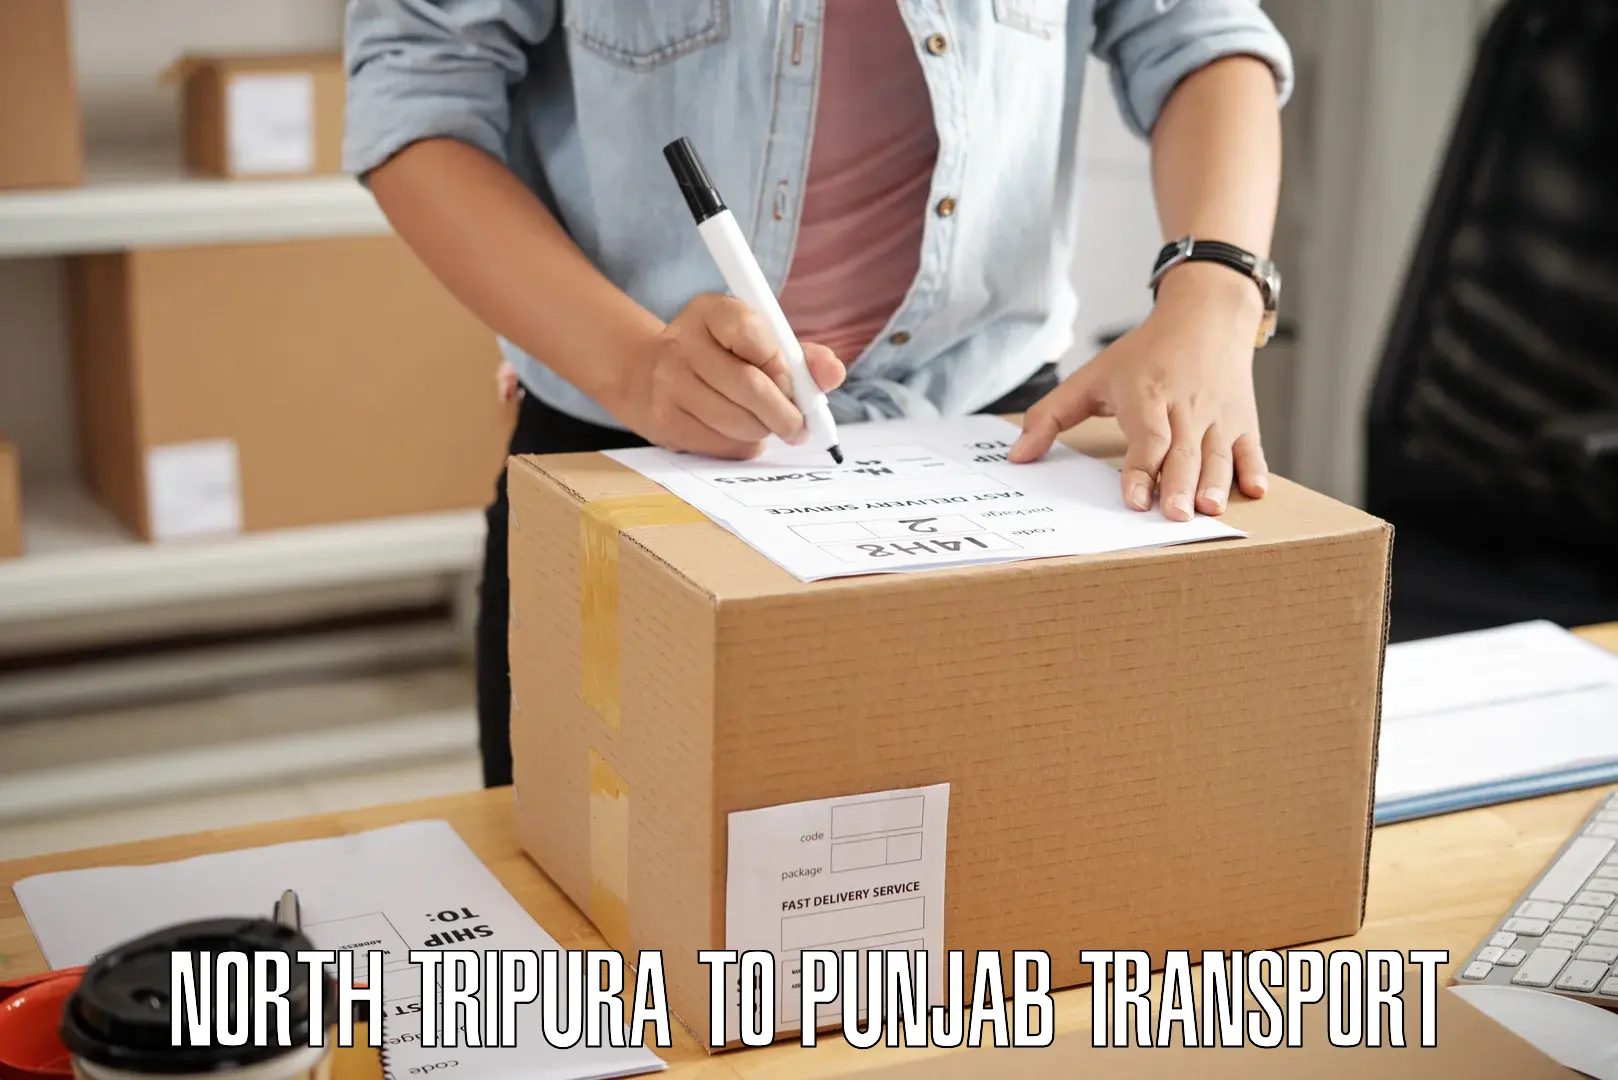 Pick up transport service North Tripura to Jalandhar